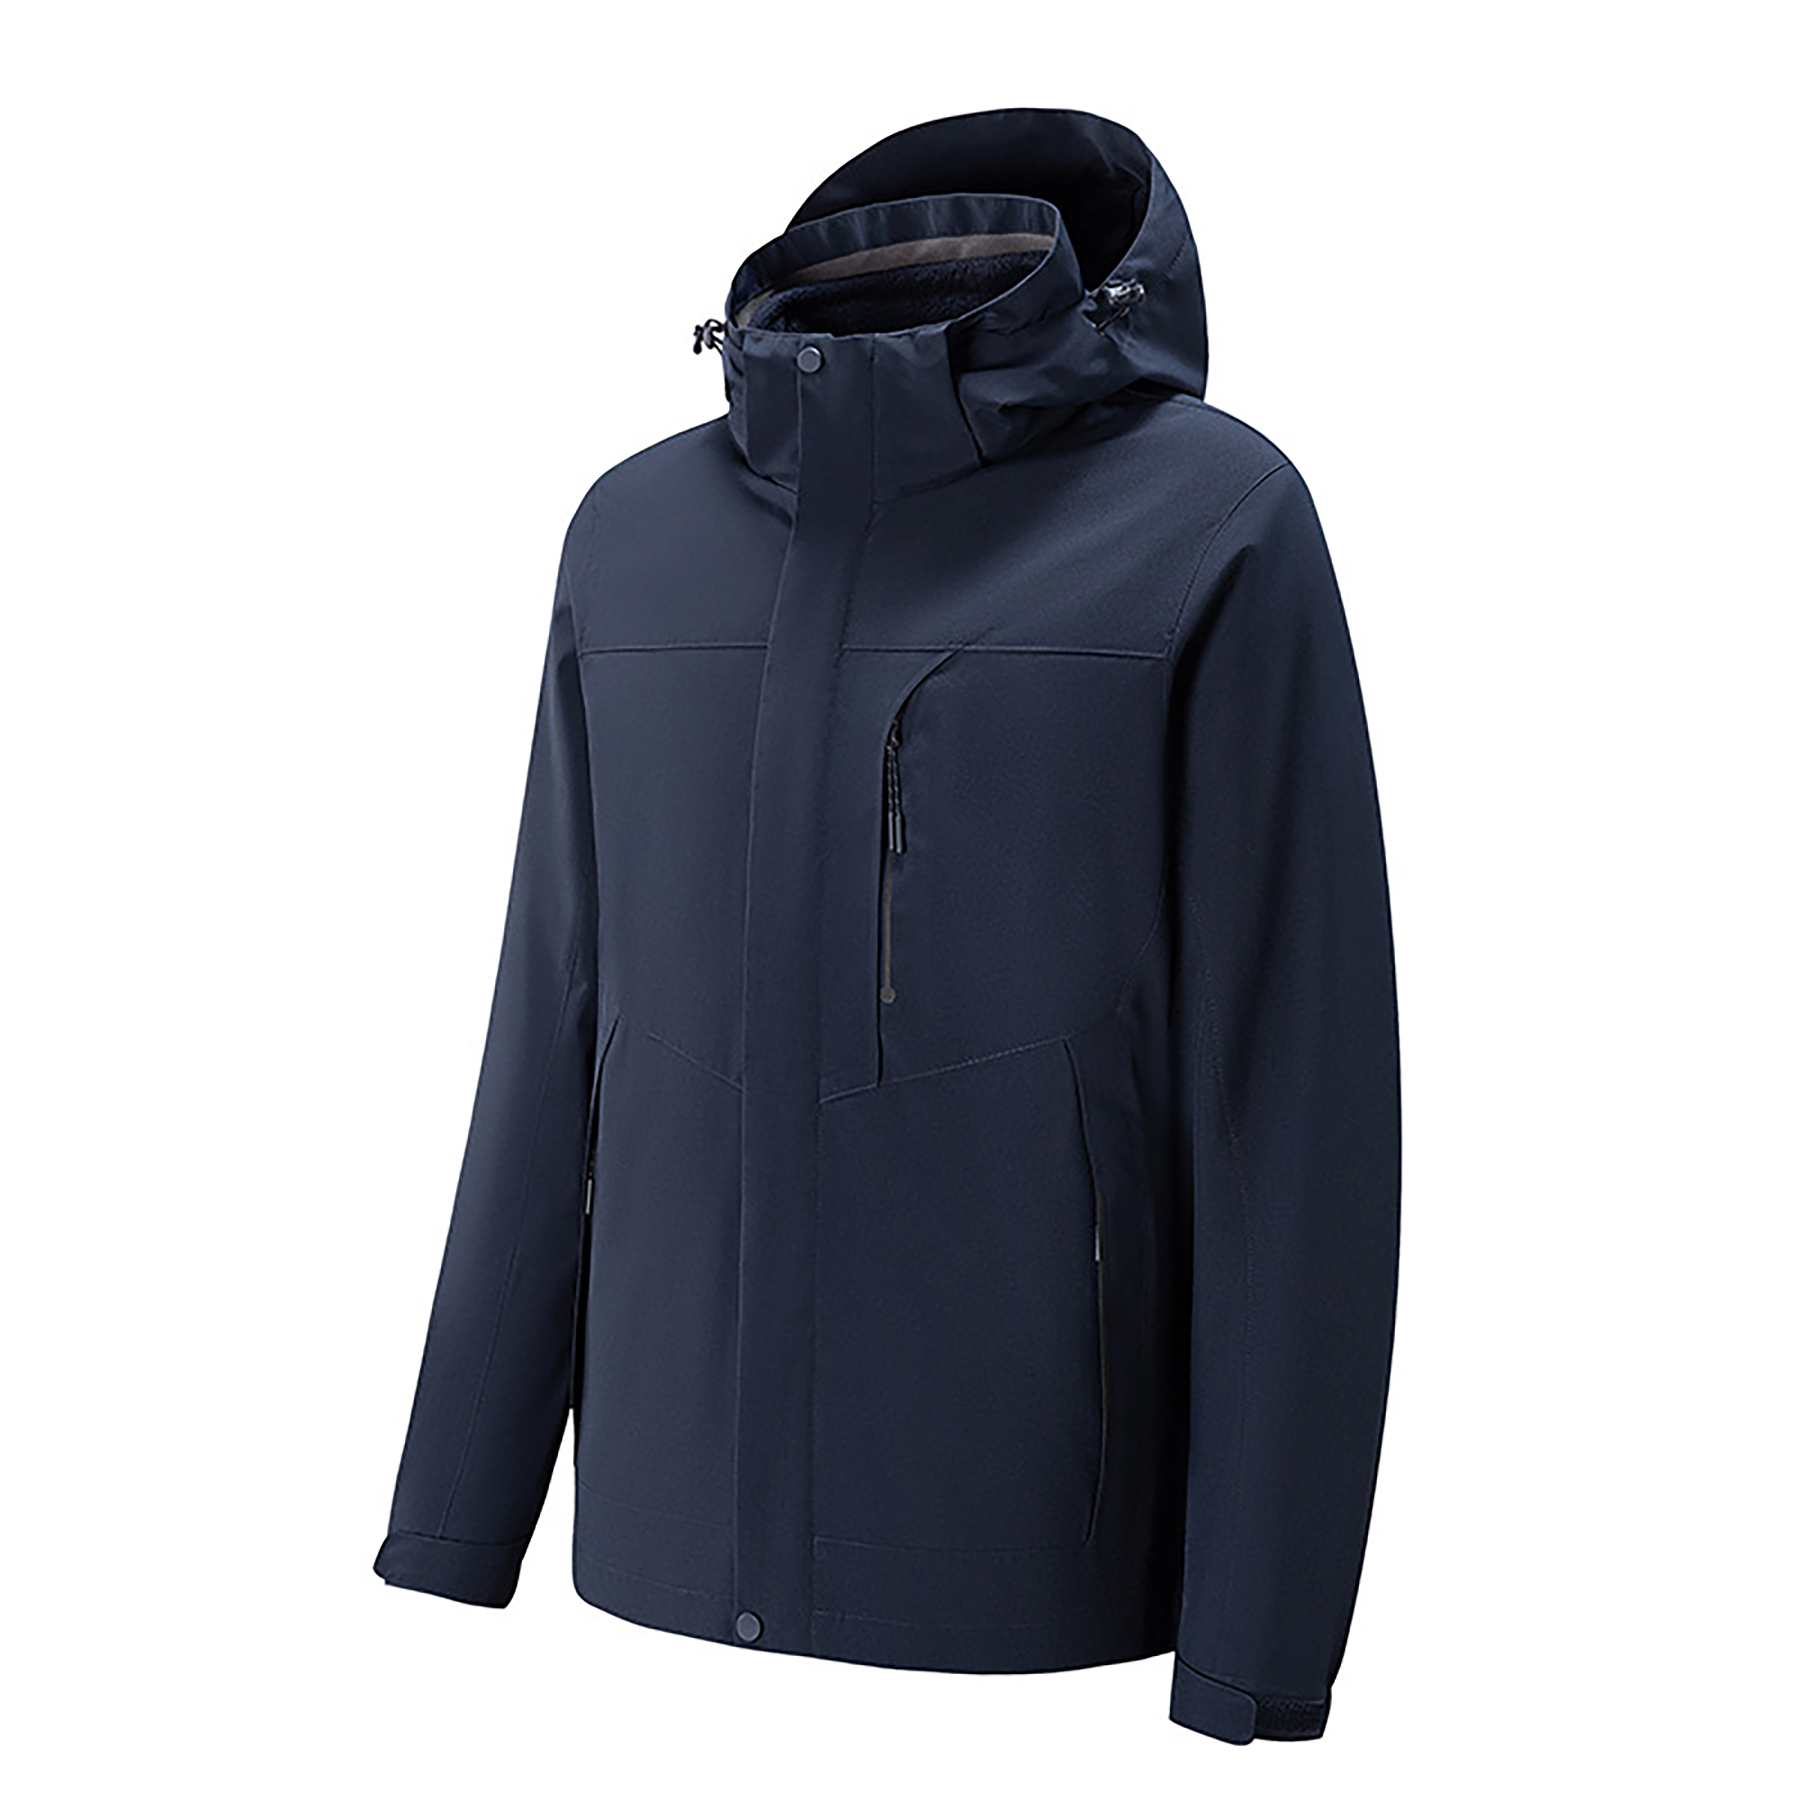 3 in 1 Warm Fleece Liner Jacket & Detachable Hood